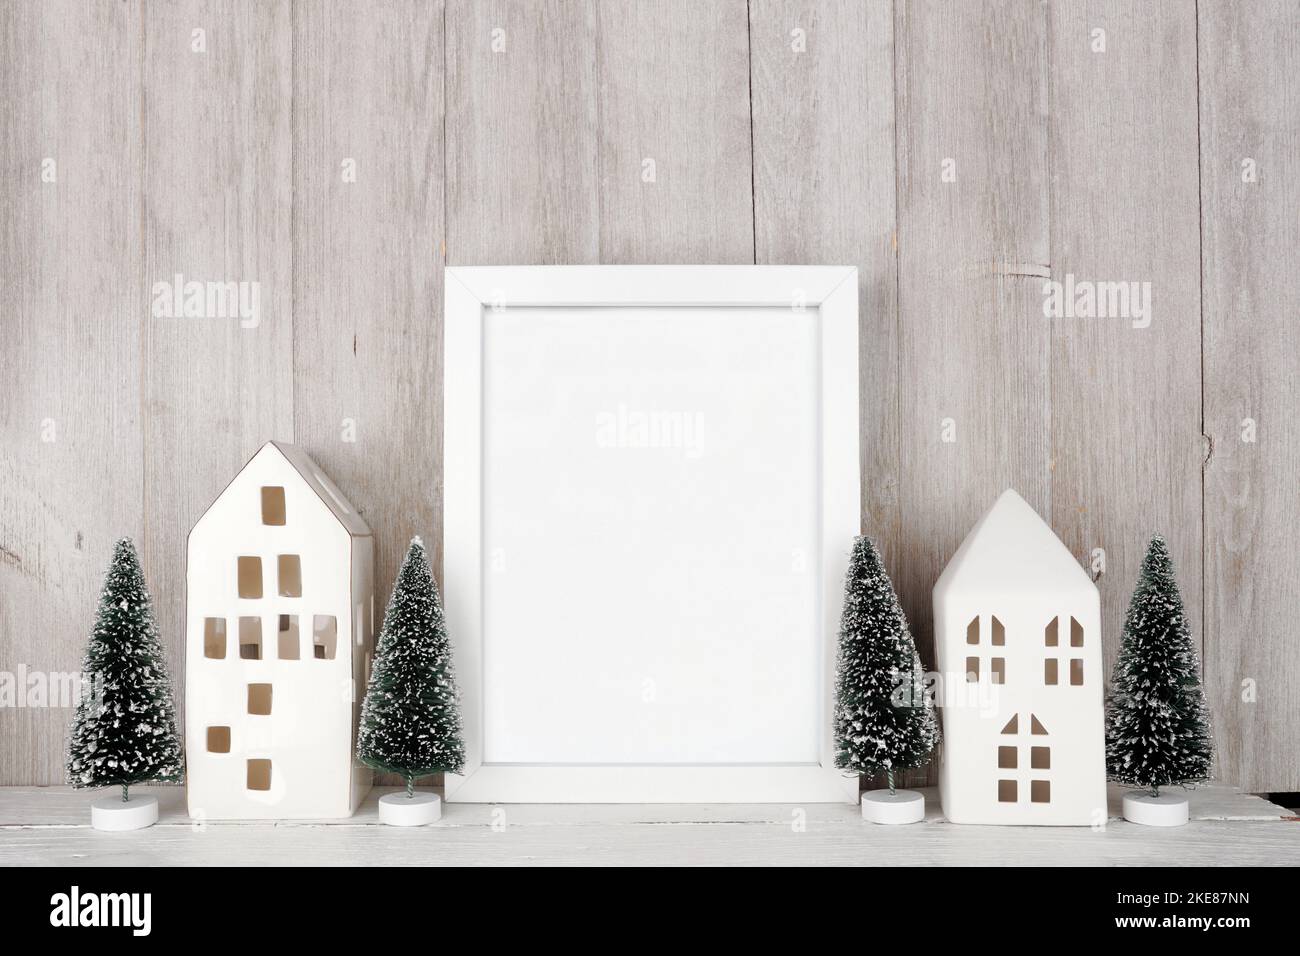 Natale mock up con cornice bianca, case bianche e decorazione ad albero. Cornice verticale su una mensola di legno contro uno sfondo rustico grigio pannello parete. Copia Foto Stock